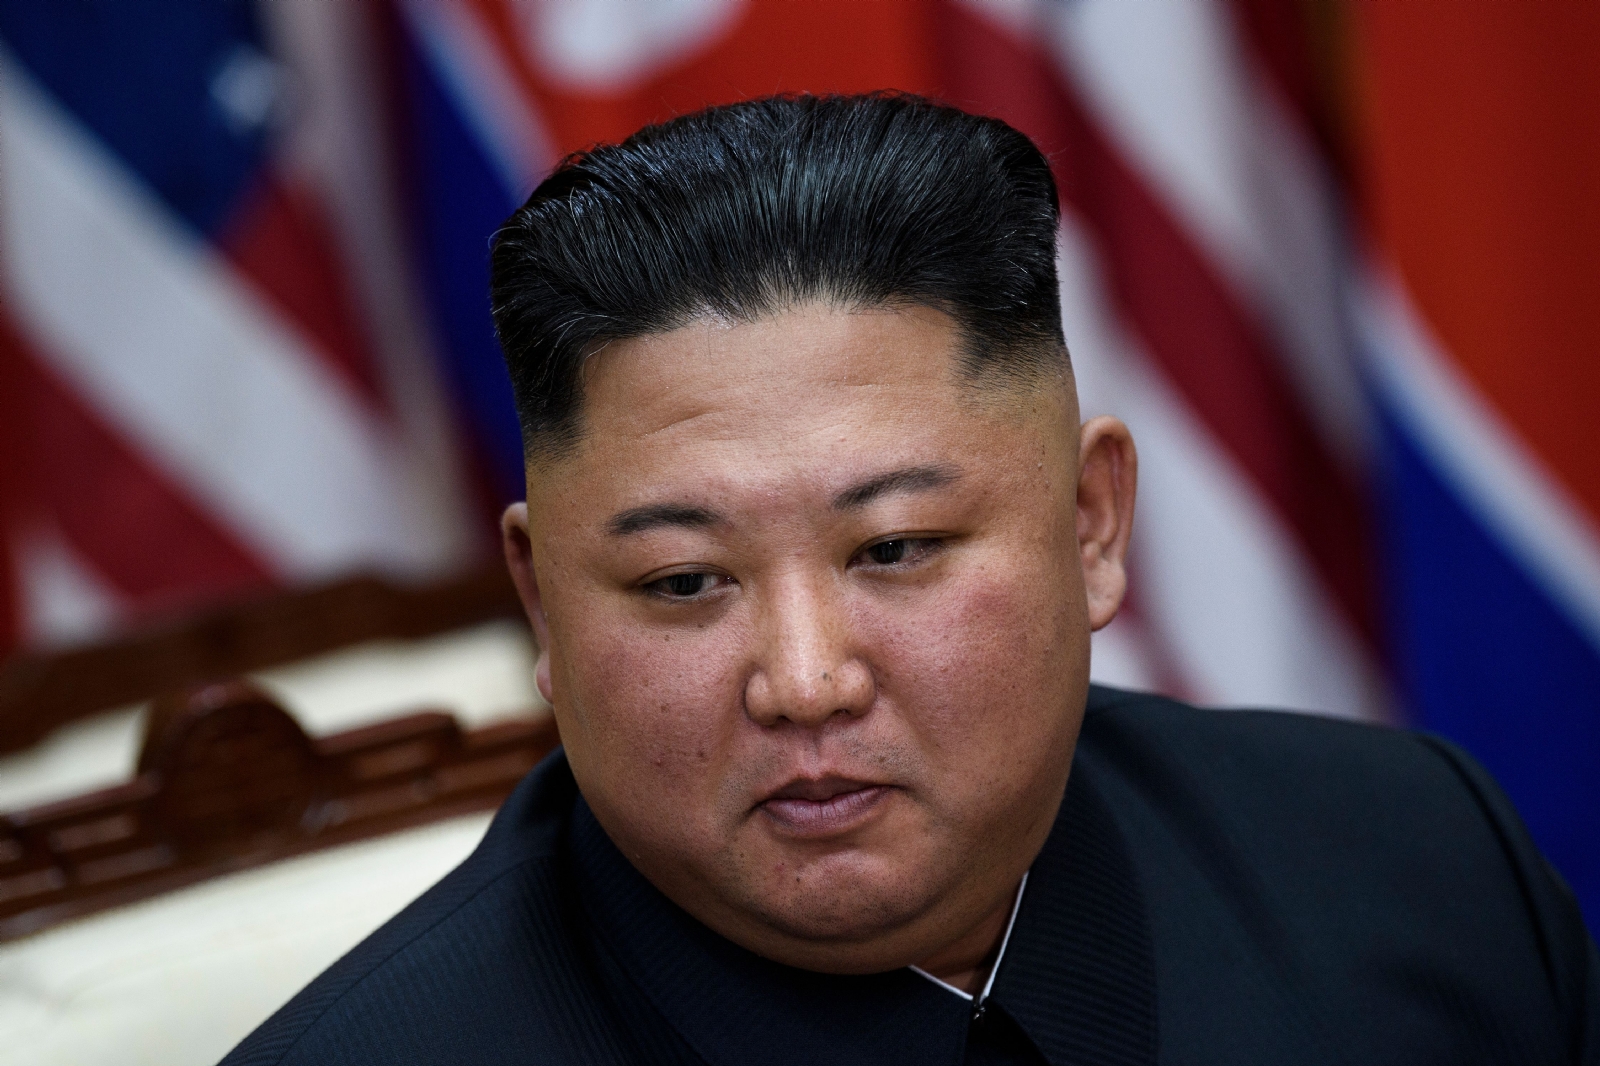 El líder de Corea, Kim Jong Un, ha comenzado a tomar medidas para que esta enfermedad no empeore en el país